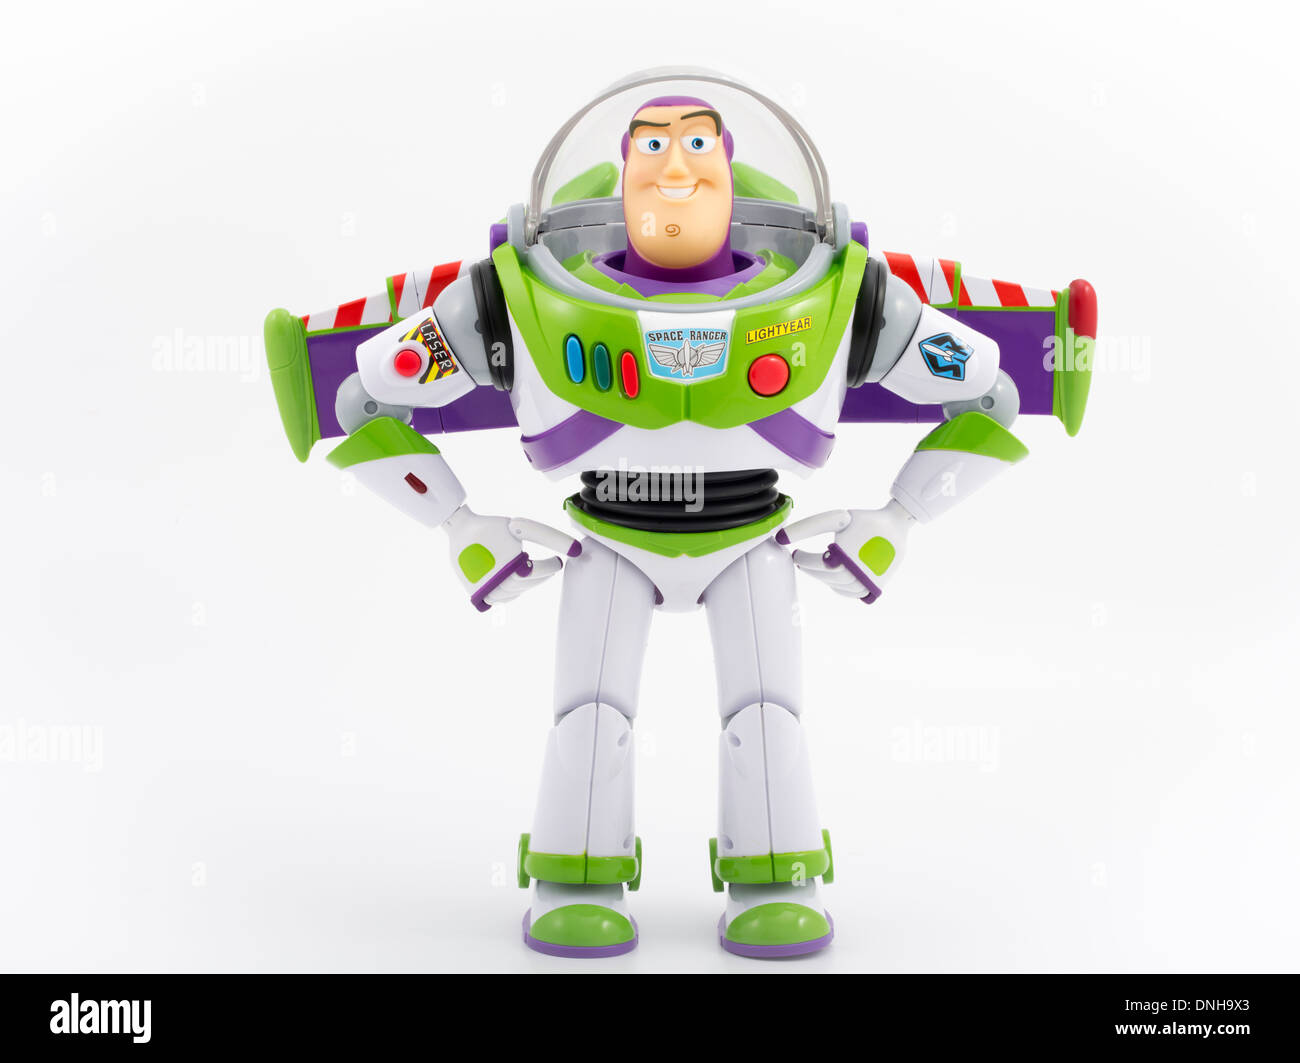 Buzz Lightyear célèbre jouet pour enfants du film Toy Story produit par Thinkway Toys Banque D'Images